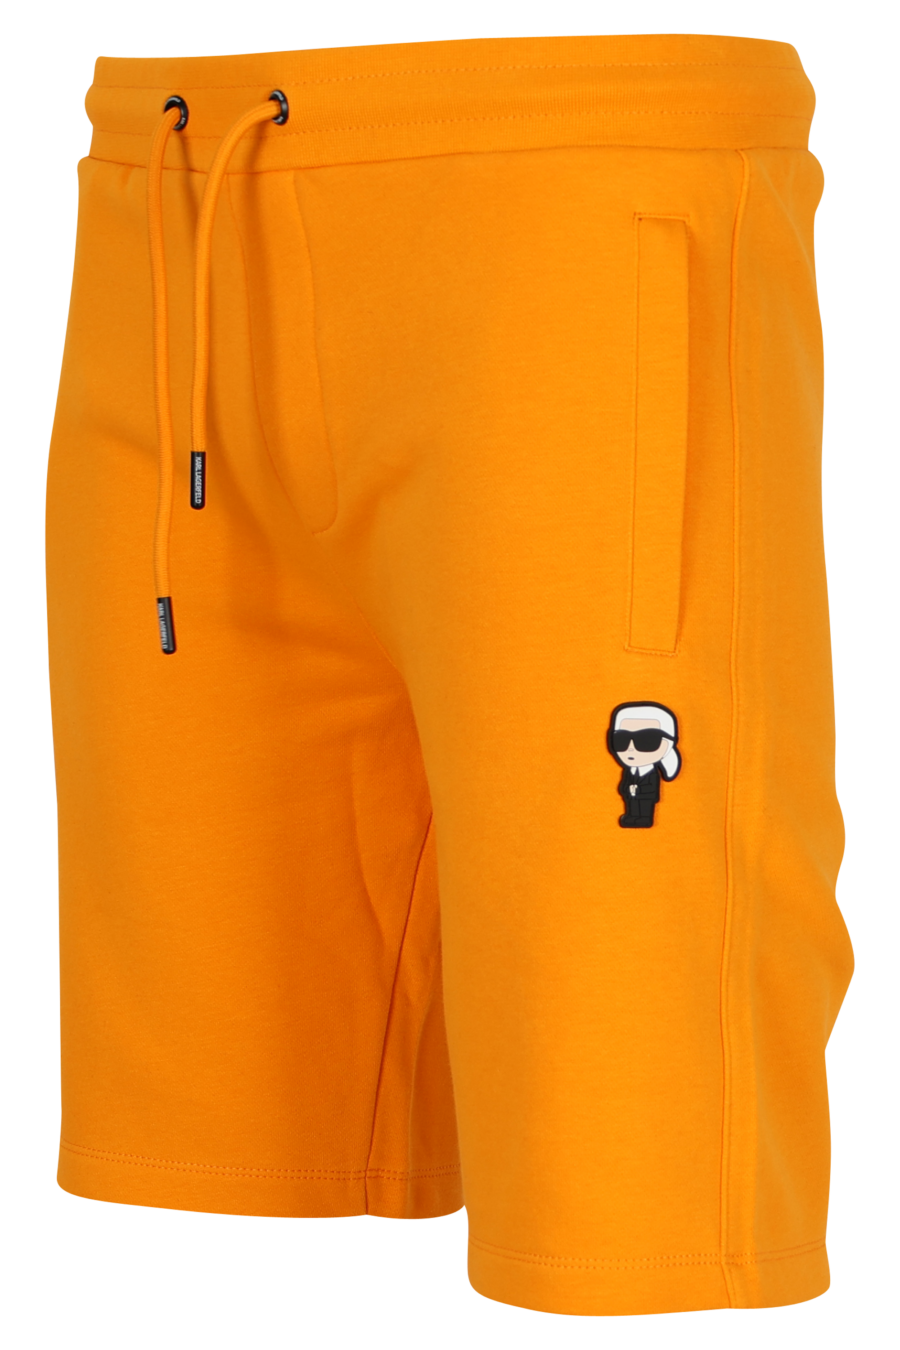 Pantalón de chándal naranja midi con minilogo "karl" en goma - 4062226932936 1